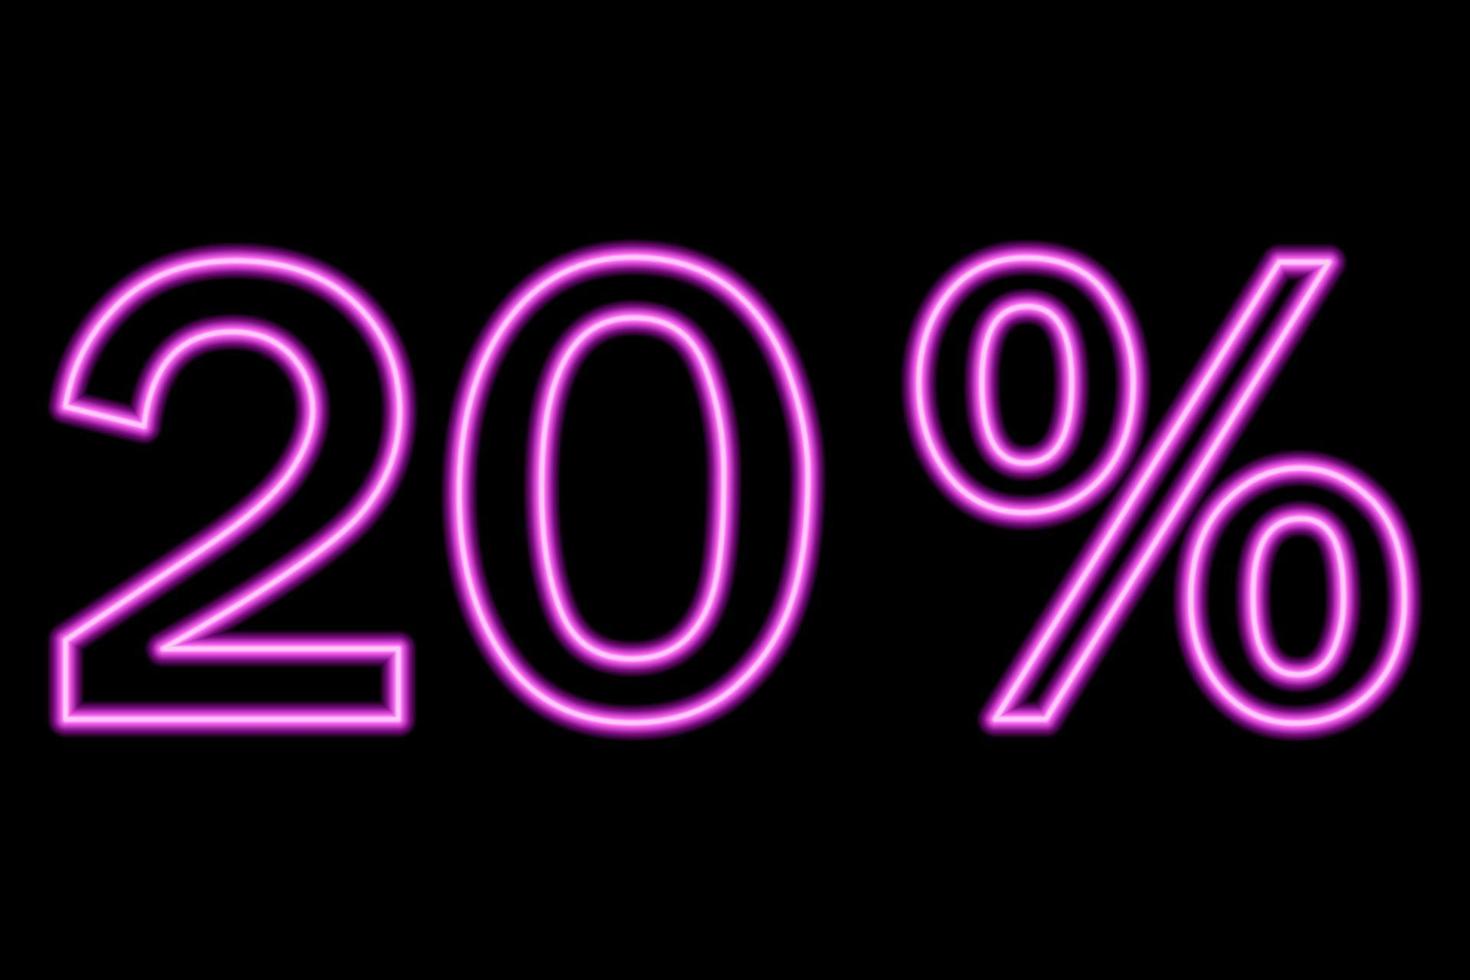 Inscripción del 20 por ciento en un fondo negro. línea rosa en estilo neón. vector